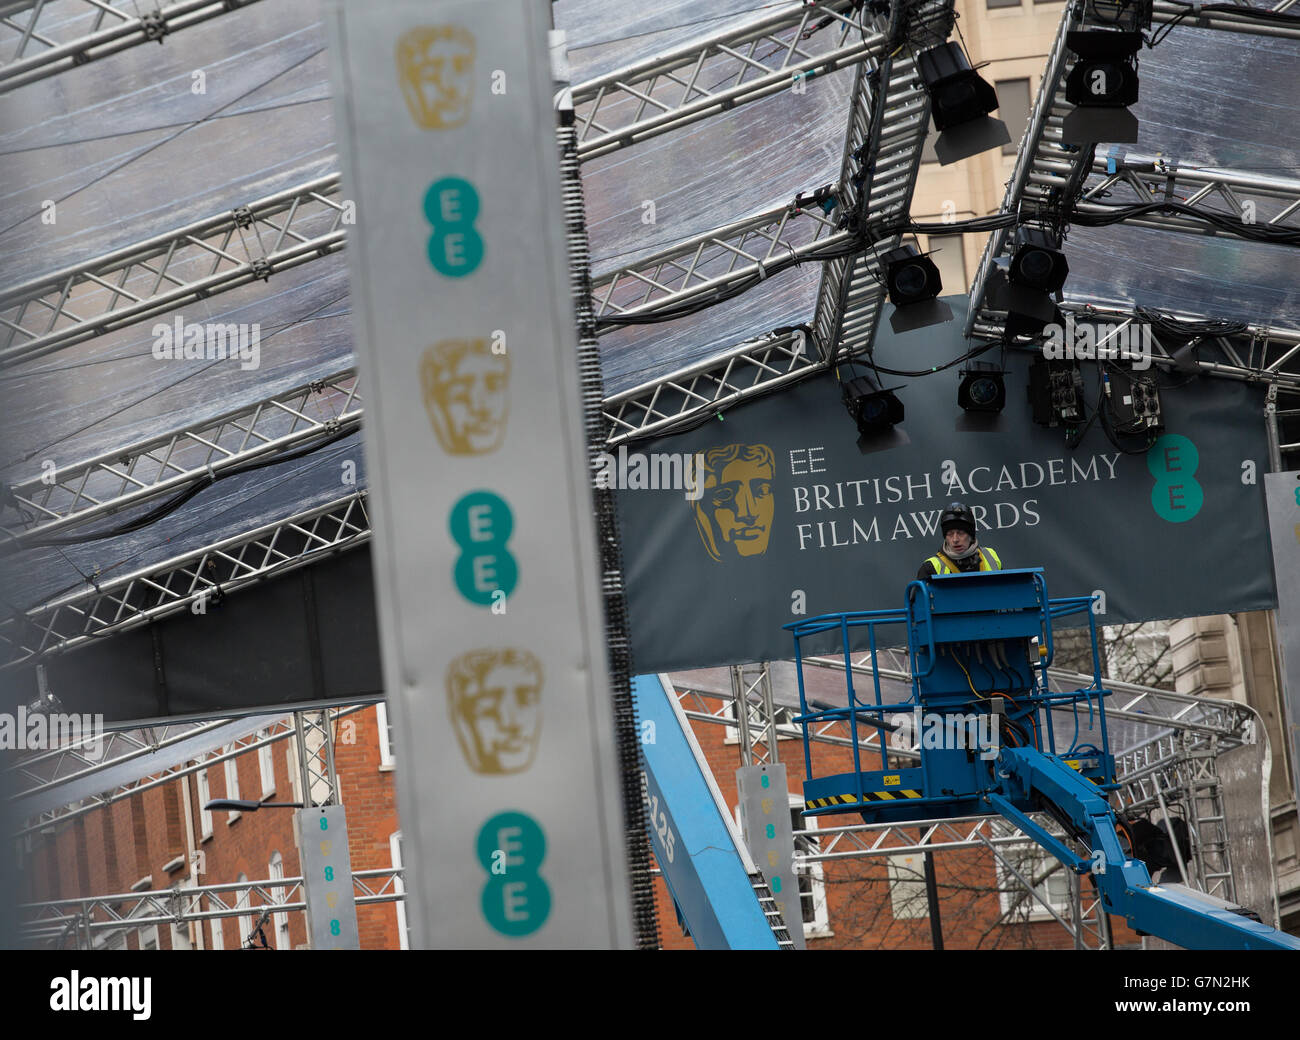 Un operaio si prepara in vista dell'EE British Academy Film Awards 2015 presso la Royal Opera House di Londra, che si terrà domenica. PREMERE ASSOCIAZIONE foto. Data immagine: Sabato 7 febbraio 2015. Vedere la storia di PA SHOWBIZ BAFTA. Il credito fotografico dovrebbe essere: Daniel Leal-Olivas/PA Wire Foto Stock